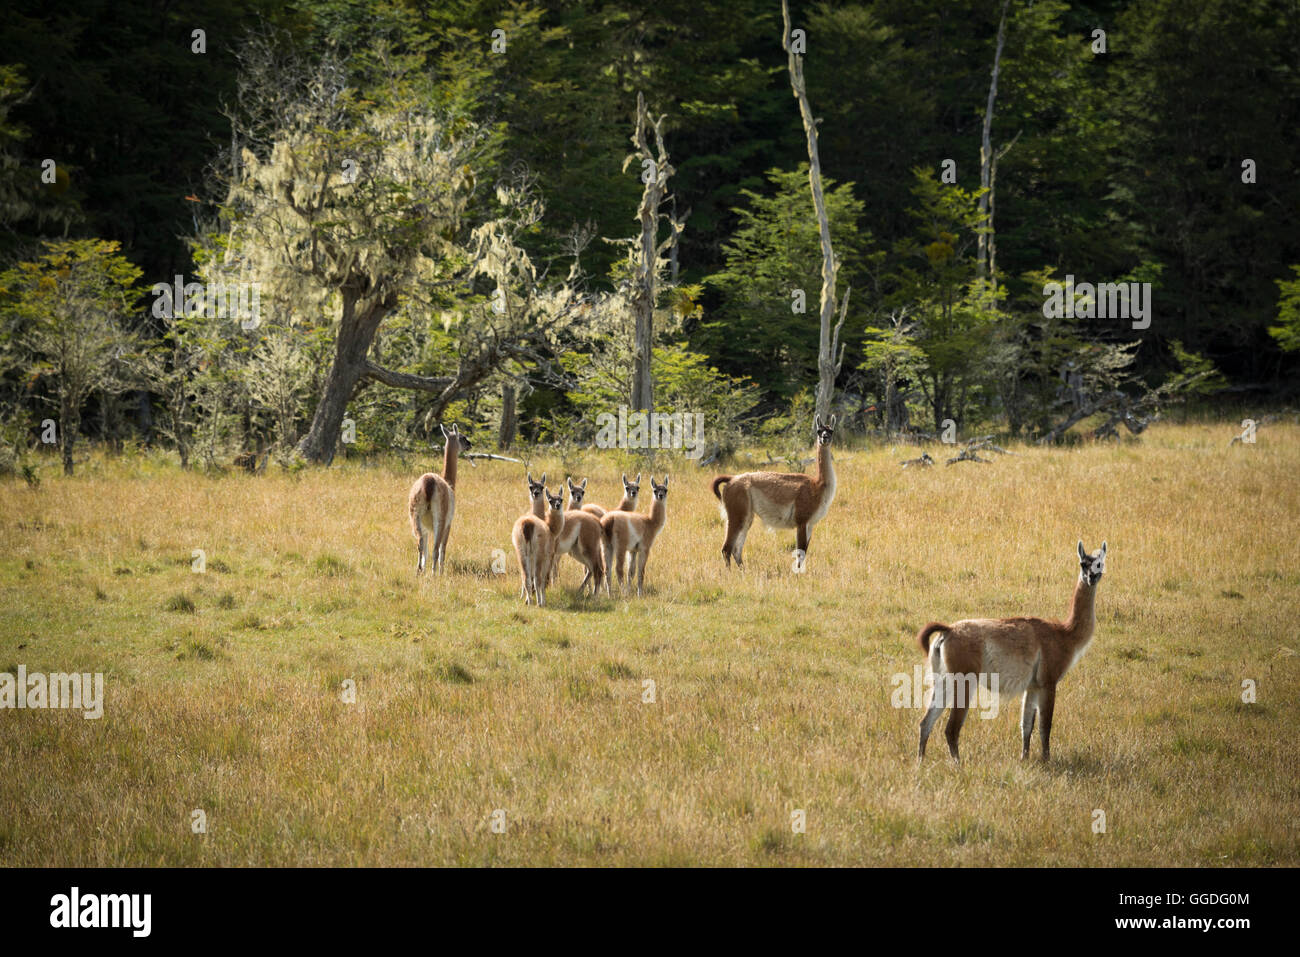 South America; Tierra del Fuego, Argentina, Estancia Rolito, ancient forest, Guanacos Stock Photo